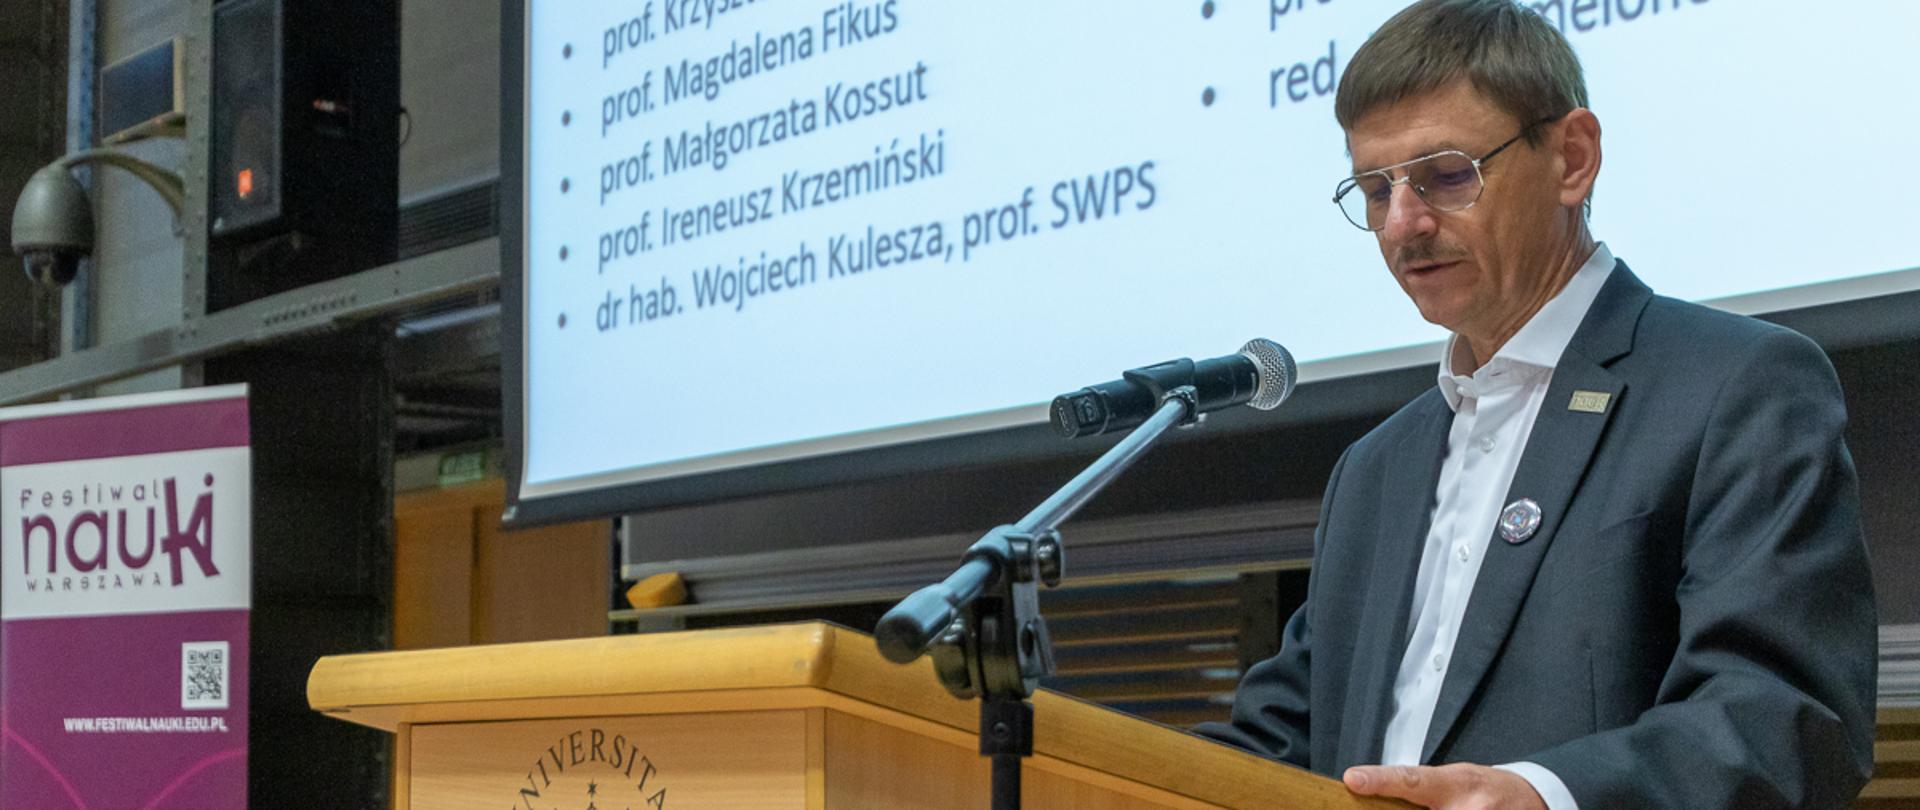 Wiceminister Grzegorz Wrochna przemawia do publiczności podczas inauguracji 24. Festiwalu Nauki.